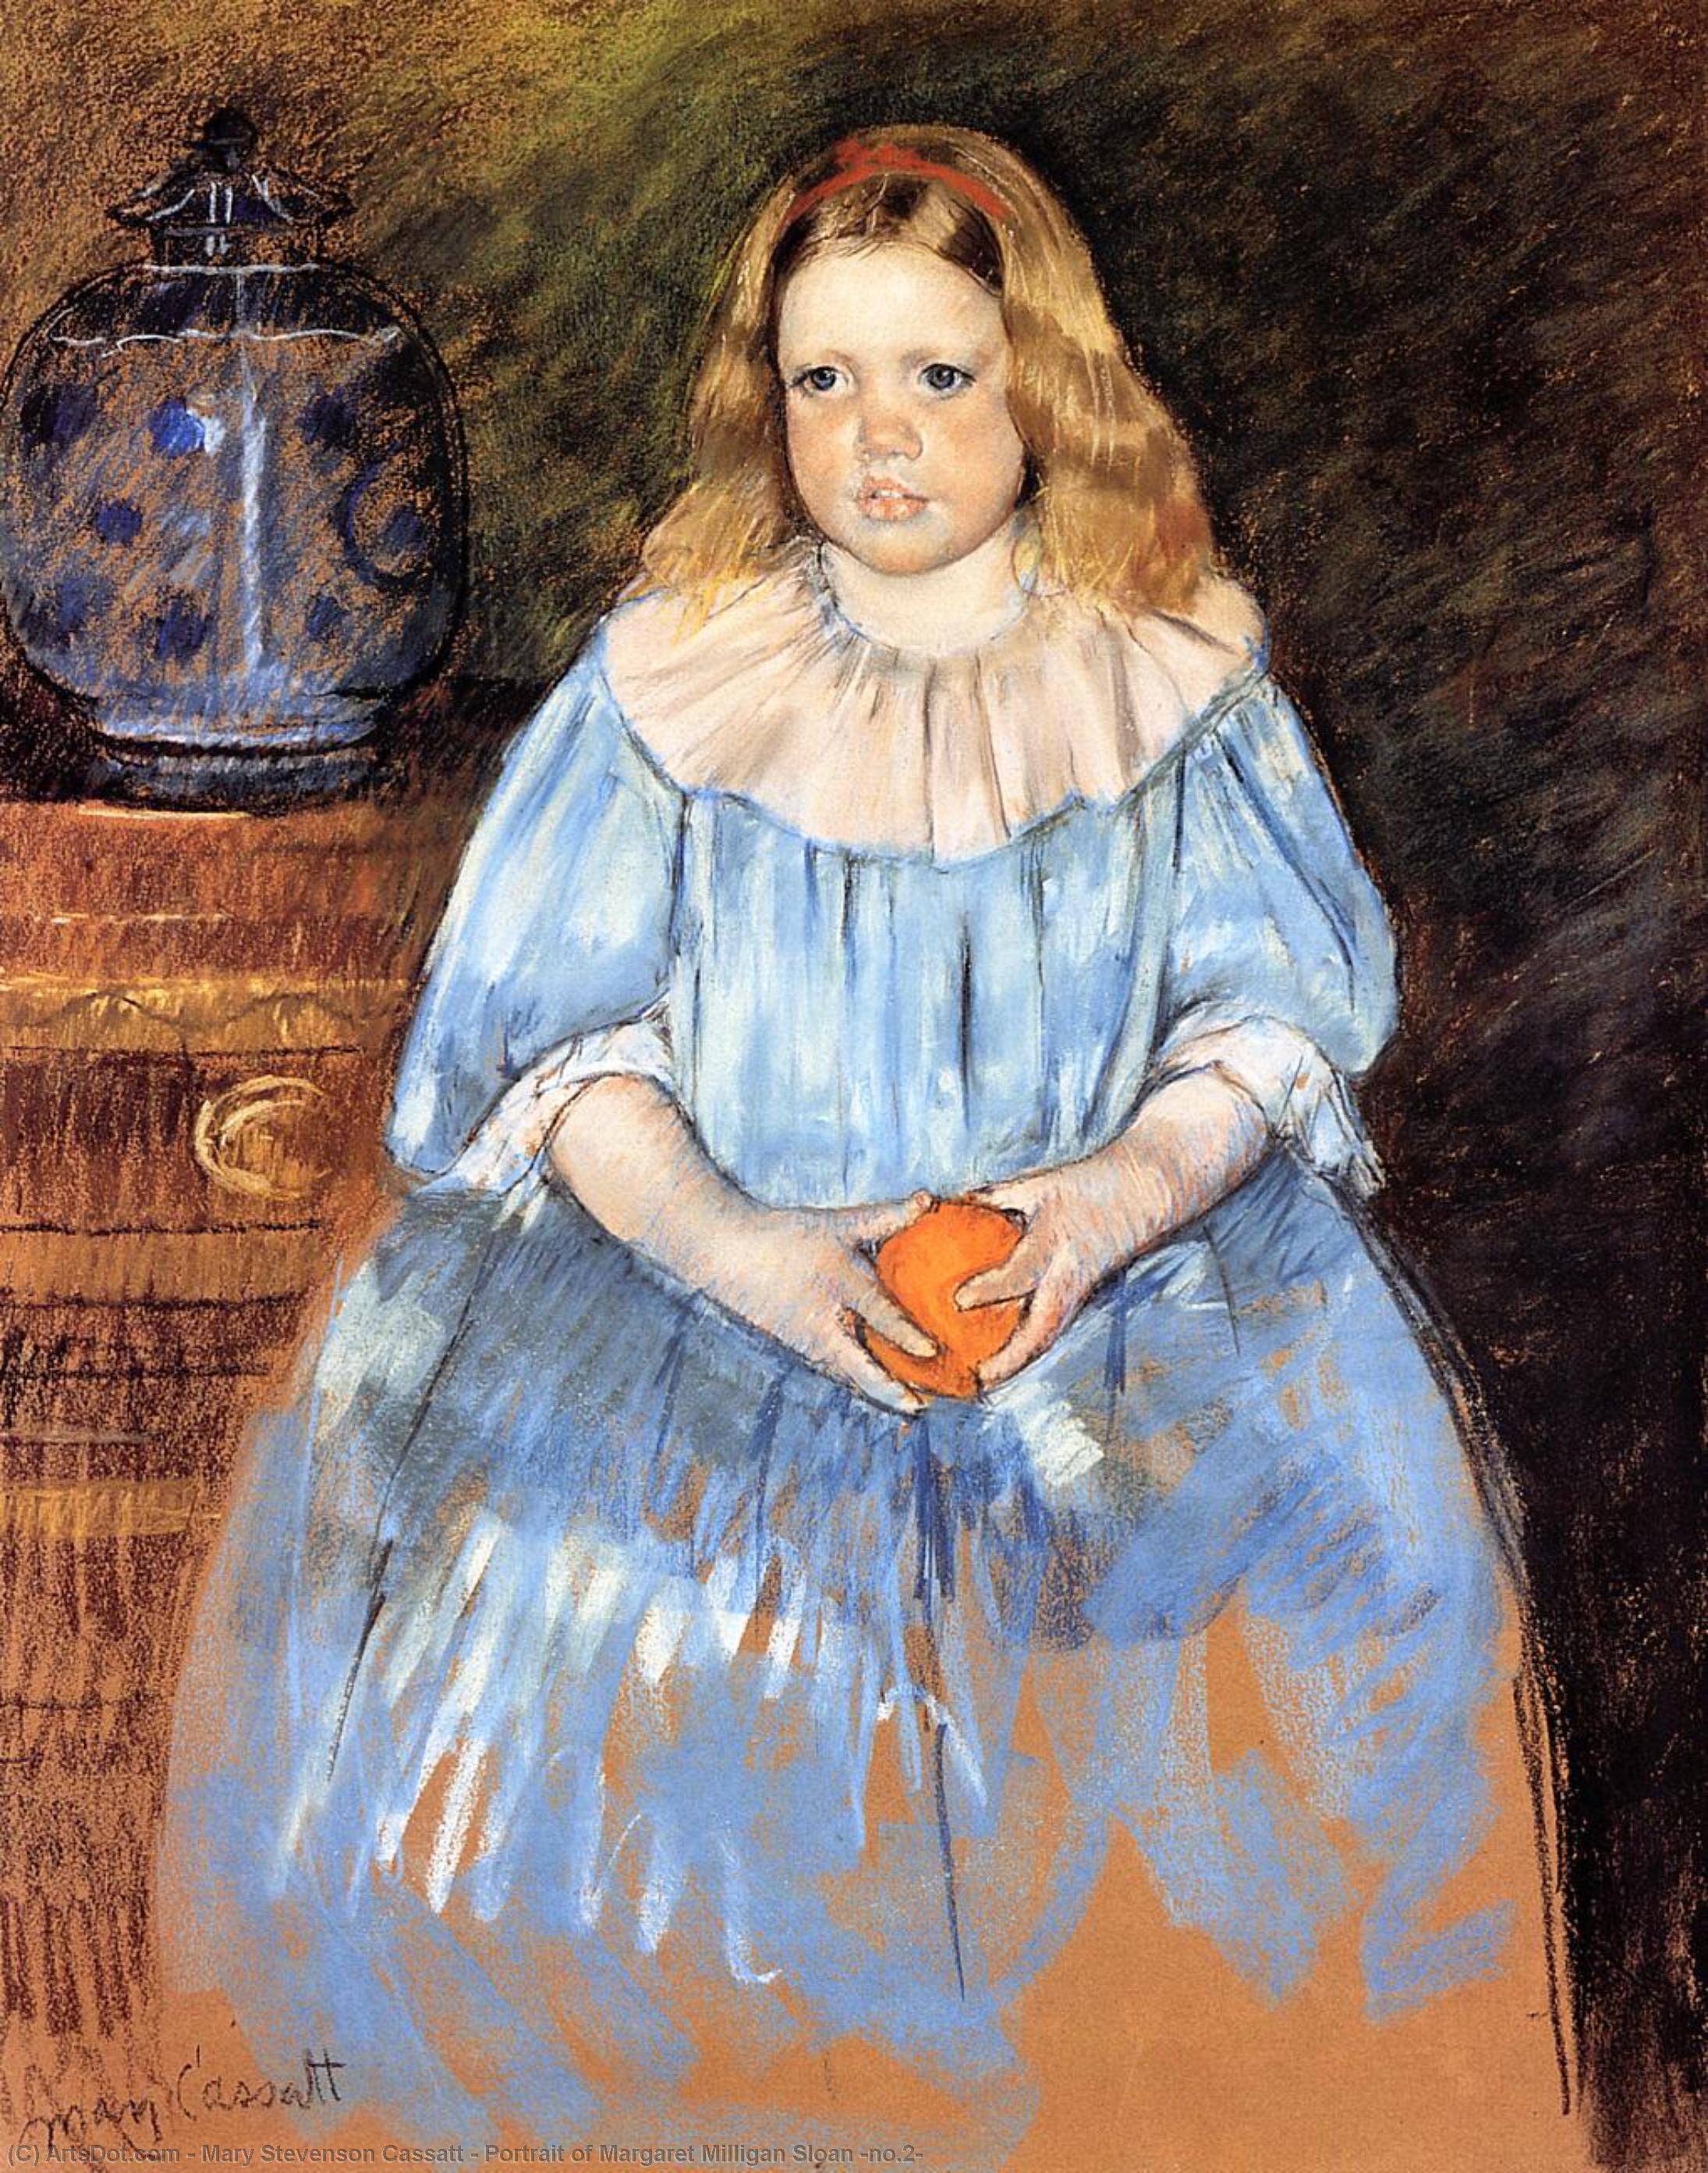 Wikioo.org - Bách khoa toàn thư về mỹ thuật - Vẽ tranh, Tác phẩm nghệ thuật Mary Stevenson Cassatt - Portrait of Margaret Milligan Sloan (no.2)